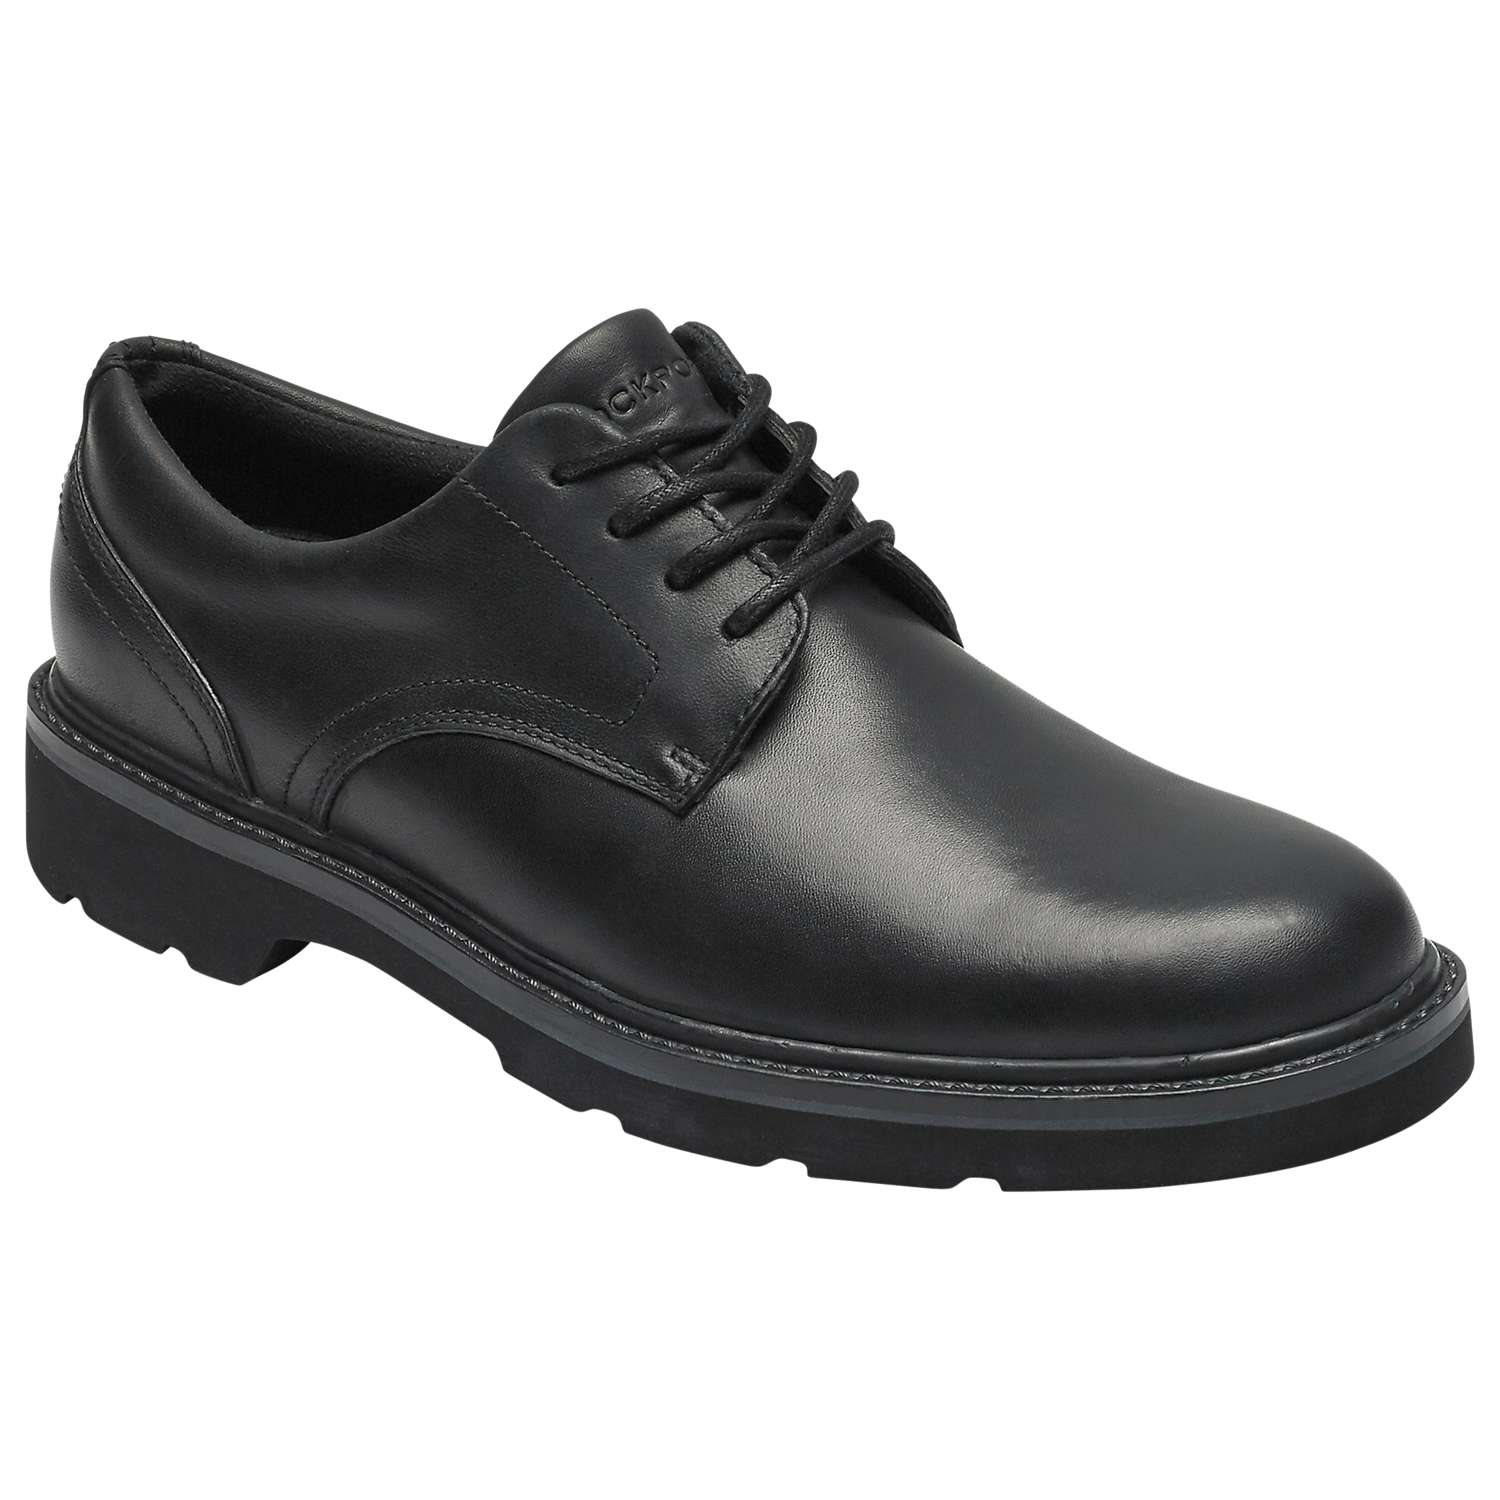 Rockport Charlee Waterproof Derby Shoes, Black at John Lewis & Partners